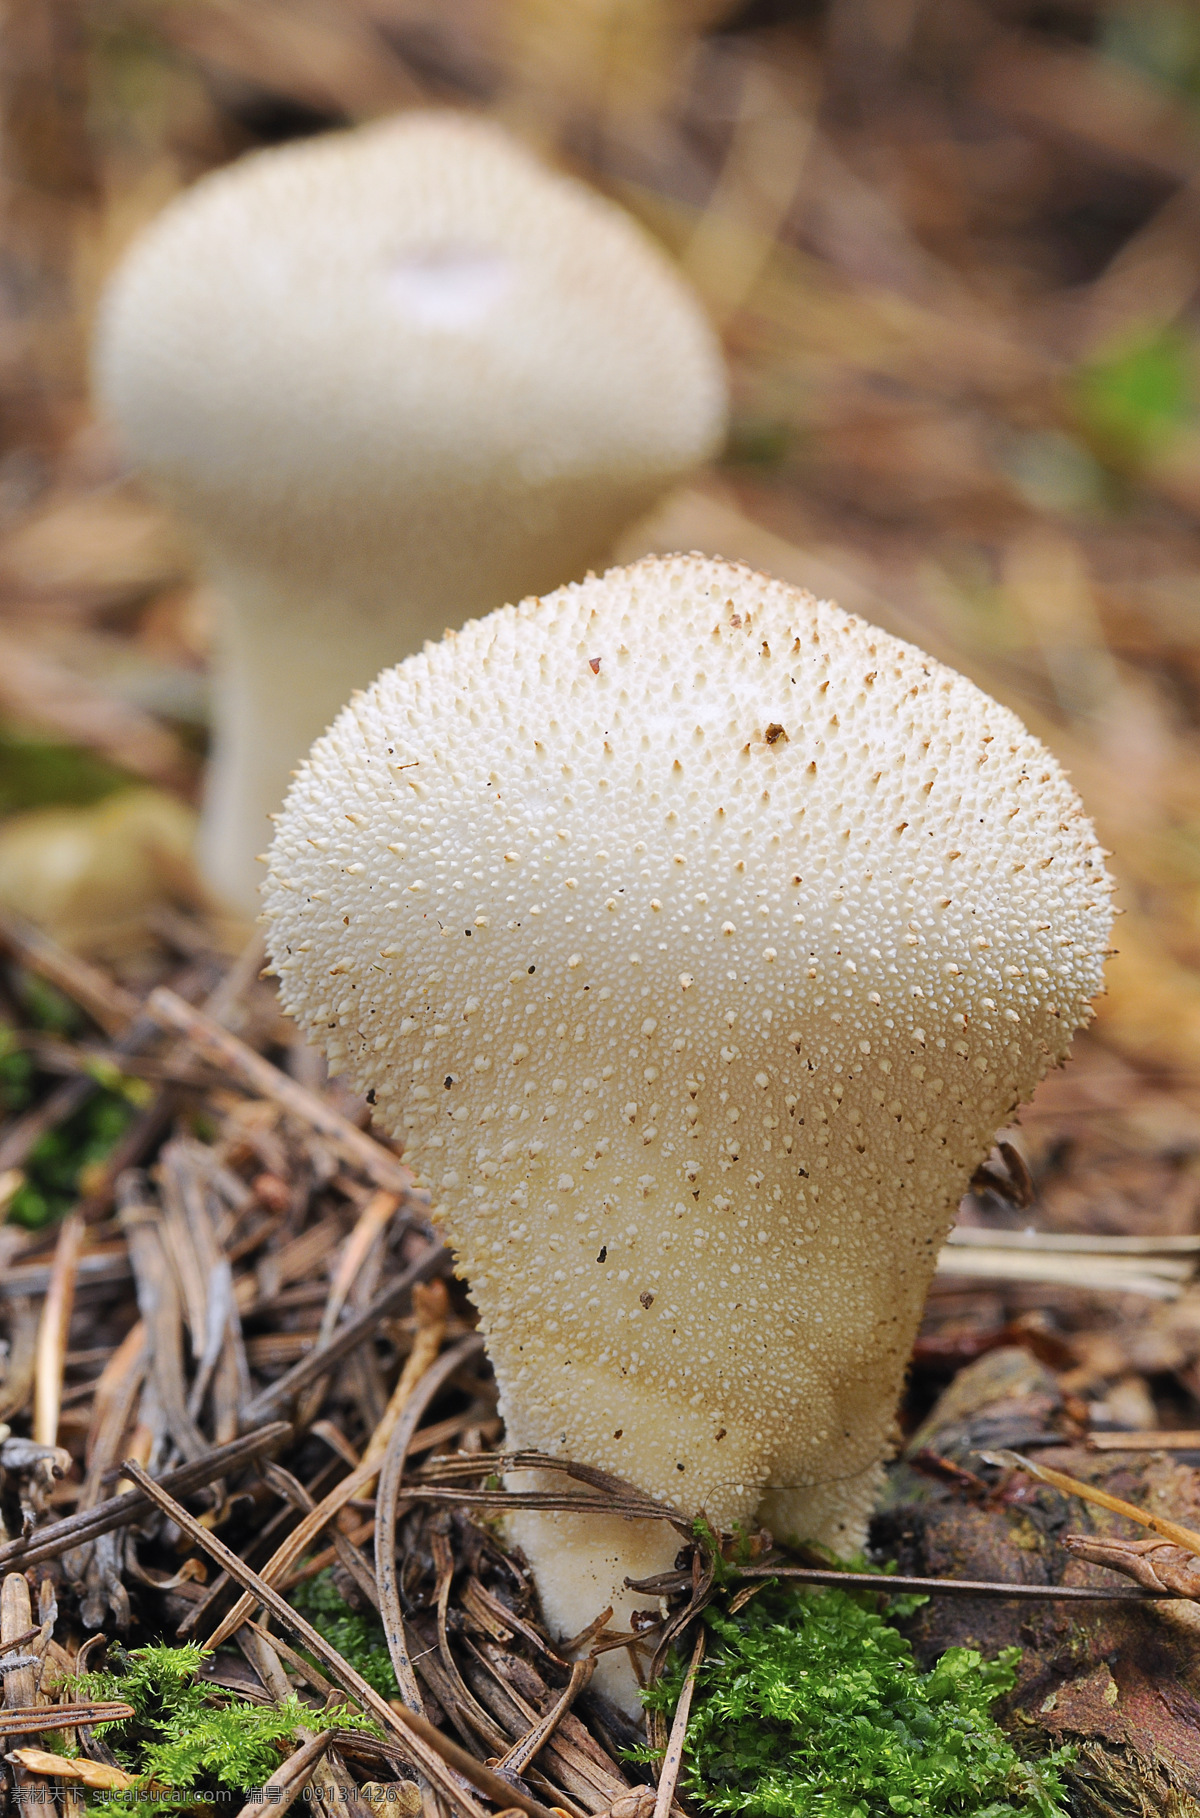 枯草 中 蘑菇 草丛 菌类 食品 蘑菇图片 餐饮美食